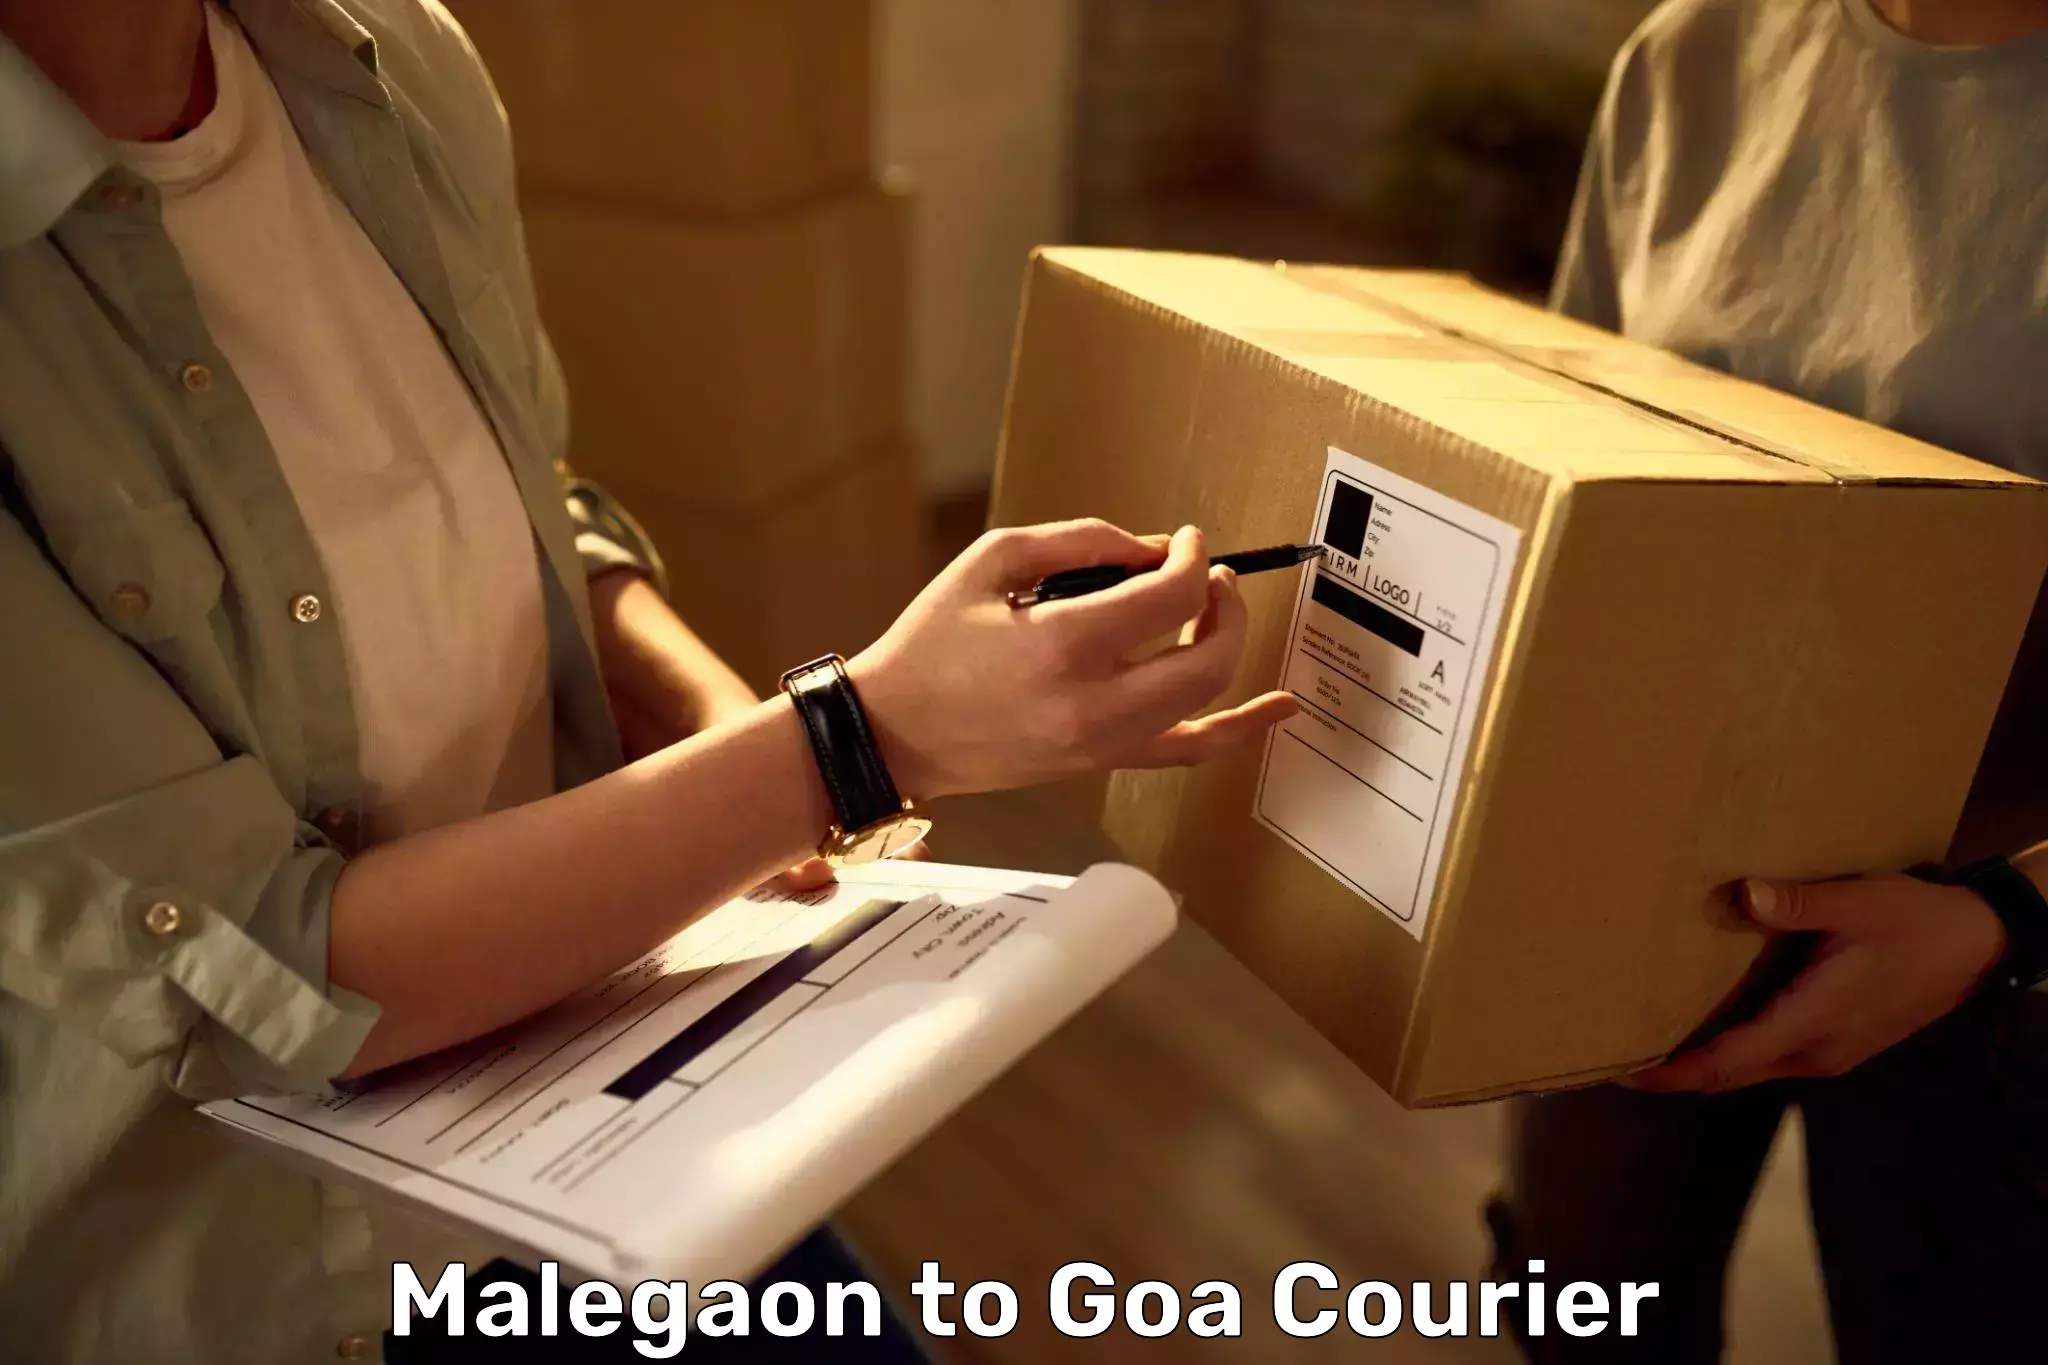 Door-to-door baggage service Malegaon to IIT Goa